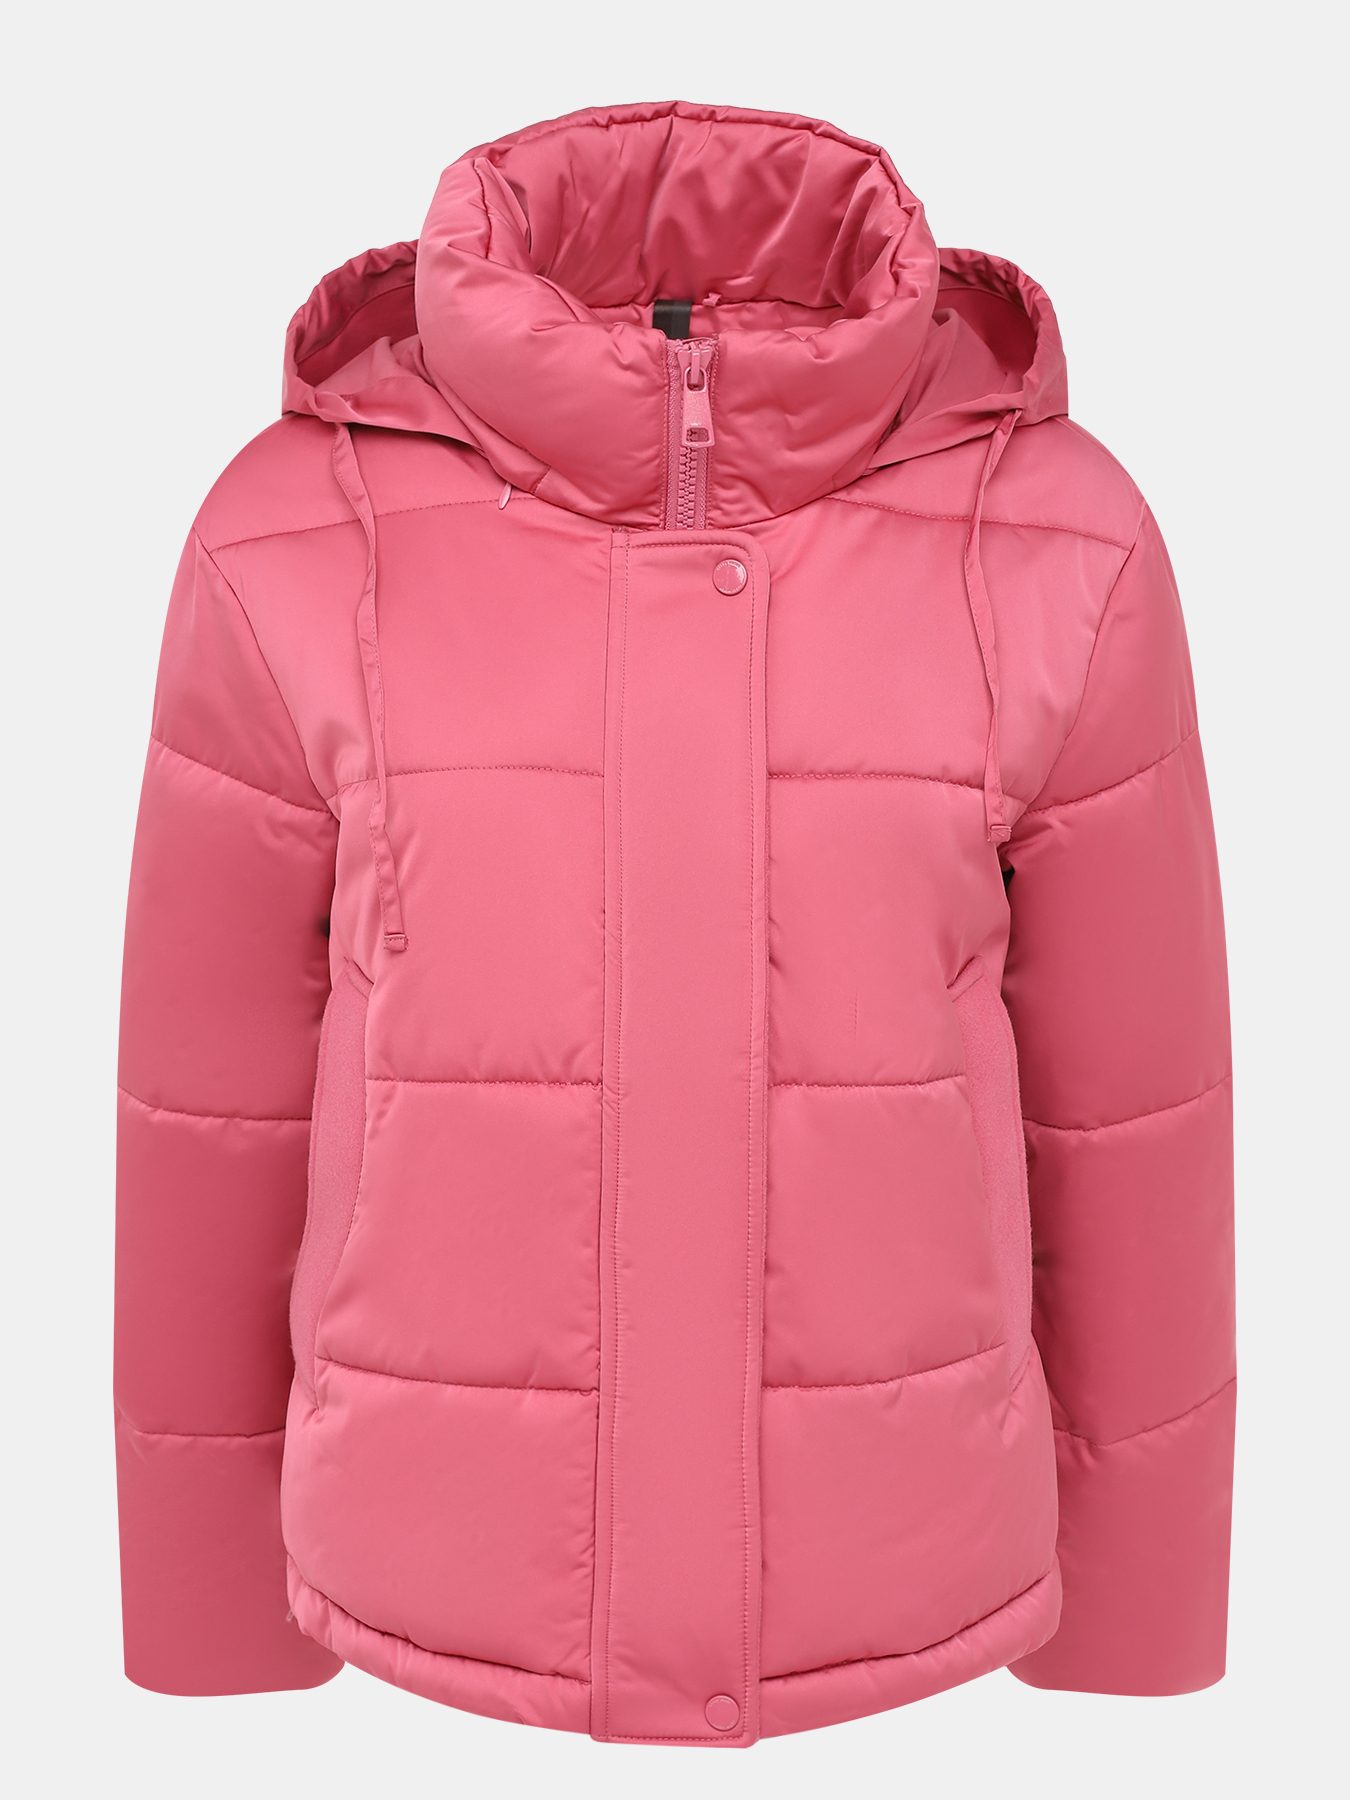 Куртка Gerry Weber 427708-021, цвет розовый, размер 46